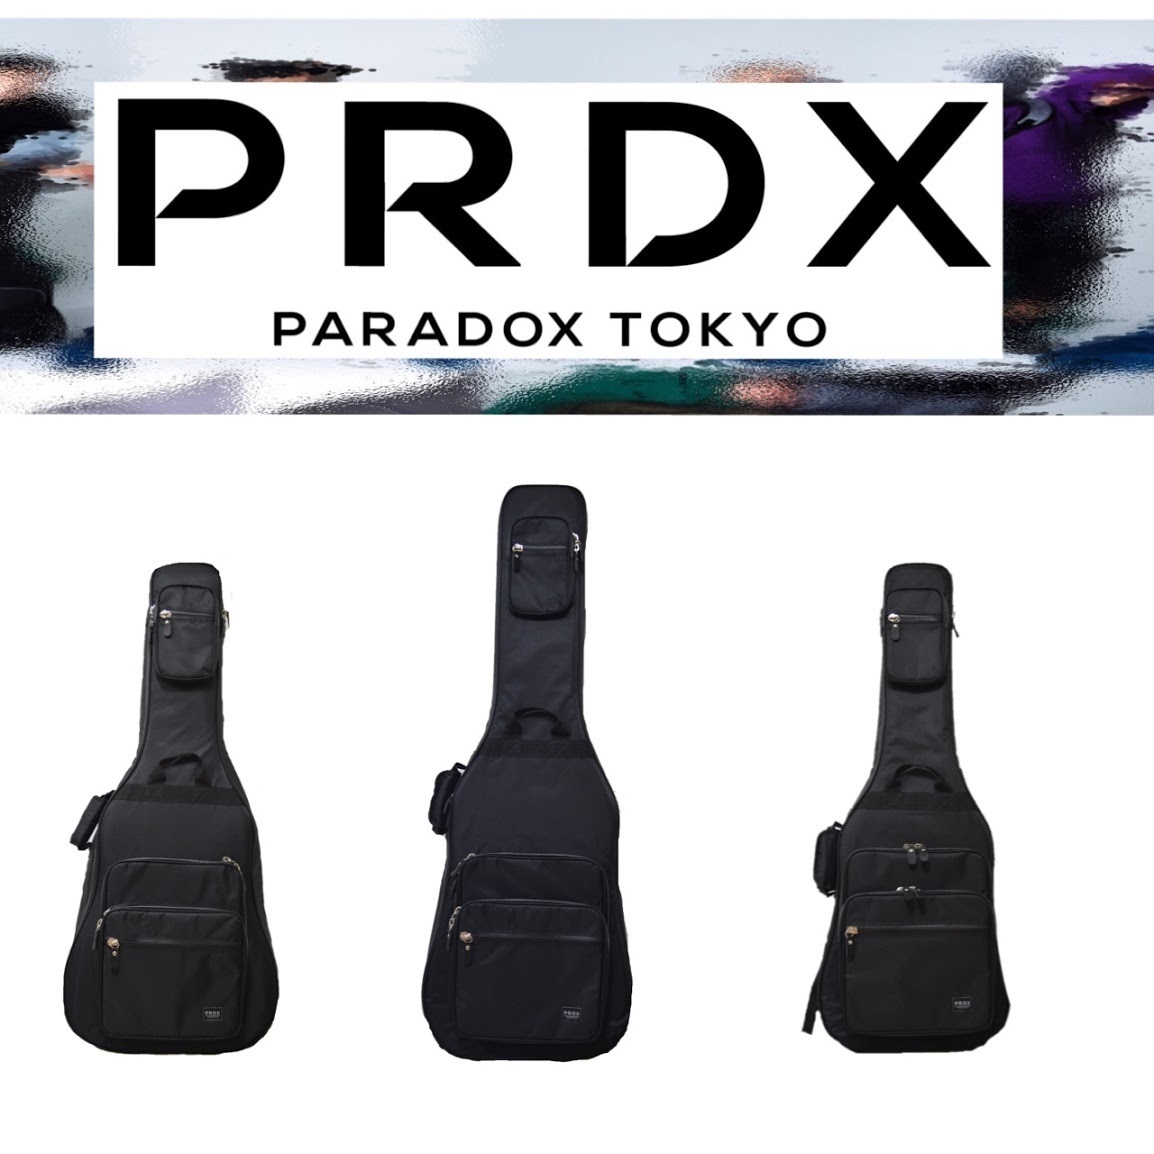 PARADOX TOKYO (パラドックストーキョー)PRDX-30-EBエレクトリック ...